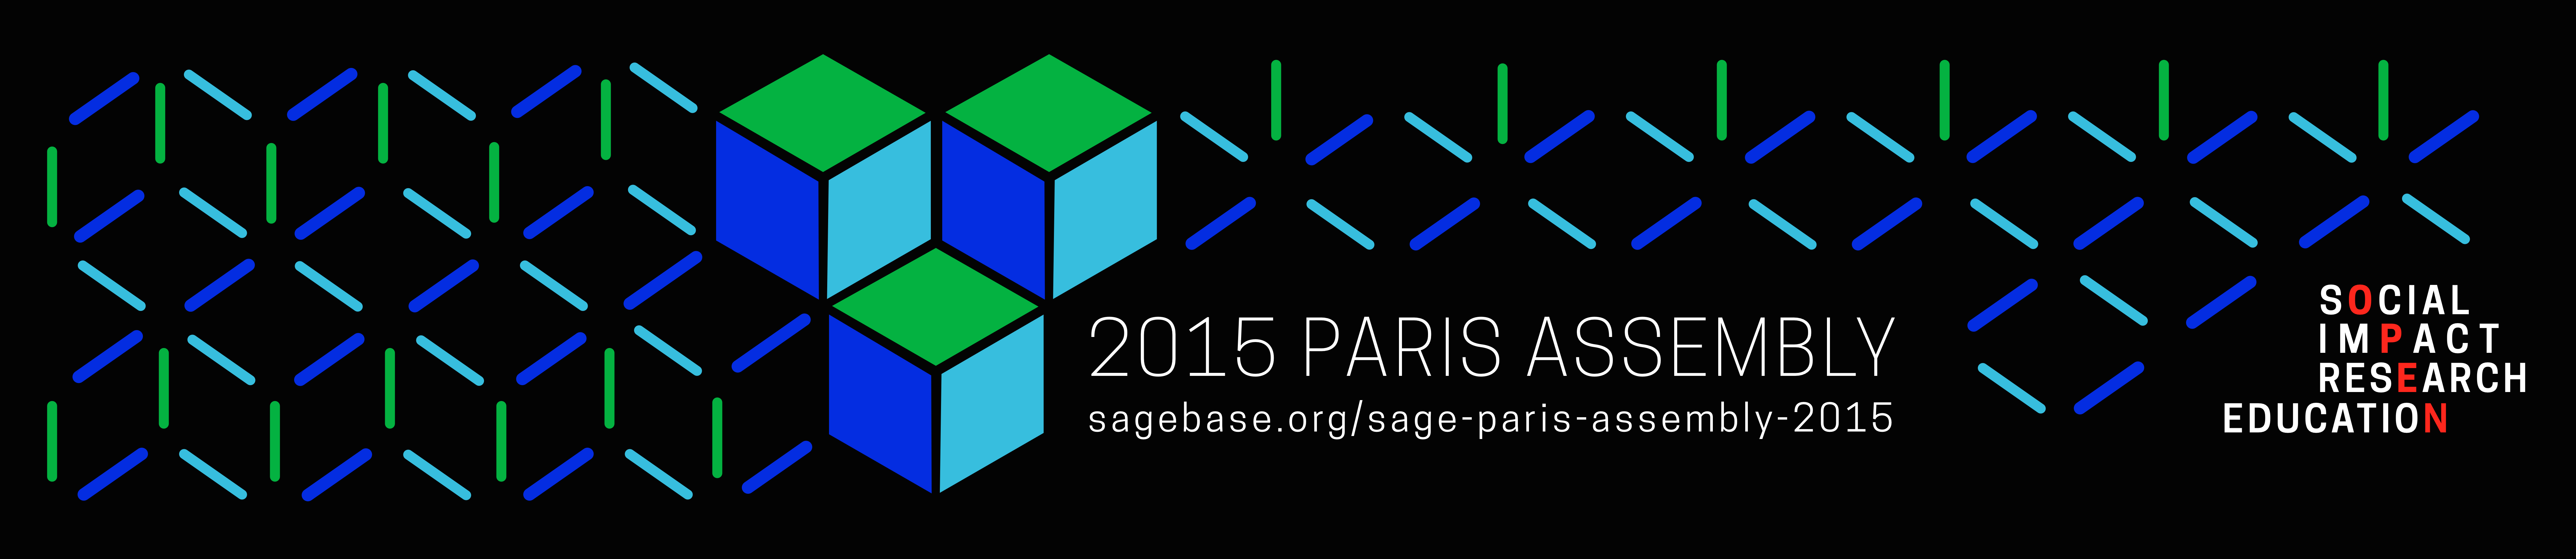 Sage Assembly 2015